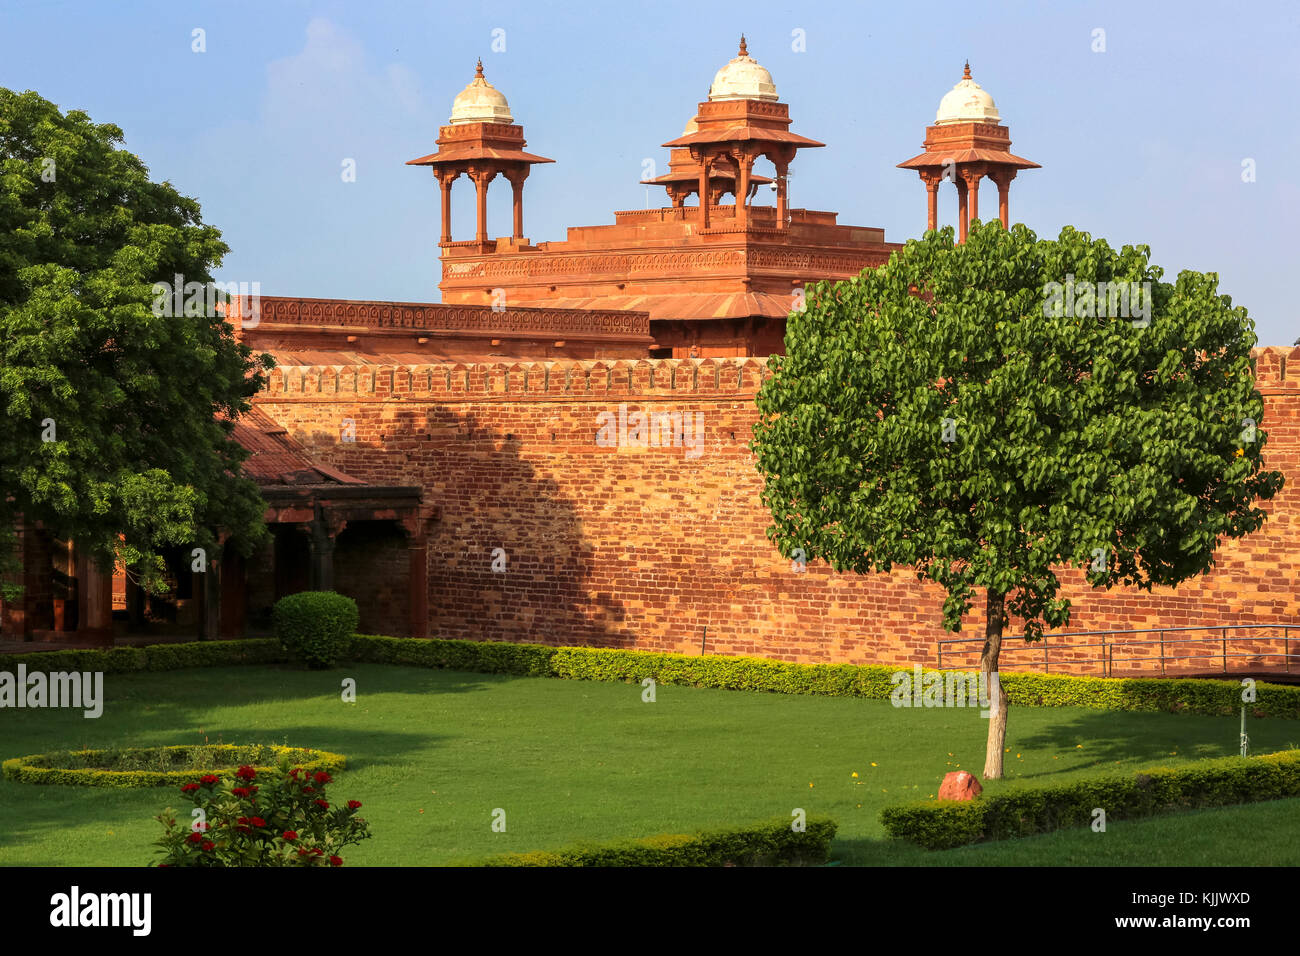 Fatehpur Sikri, fondata nel 1569 dall'imperatore Mughal Akbar, servita come la capitale dell' Impero Mughal dal 1571 al 1585. Palazzo imperiale complesso. Foto Stock